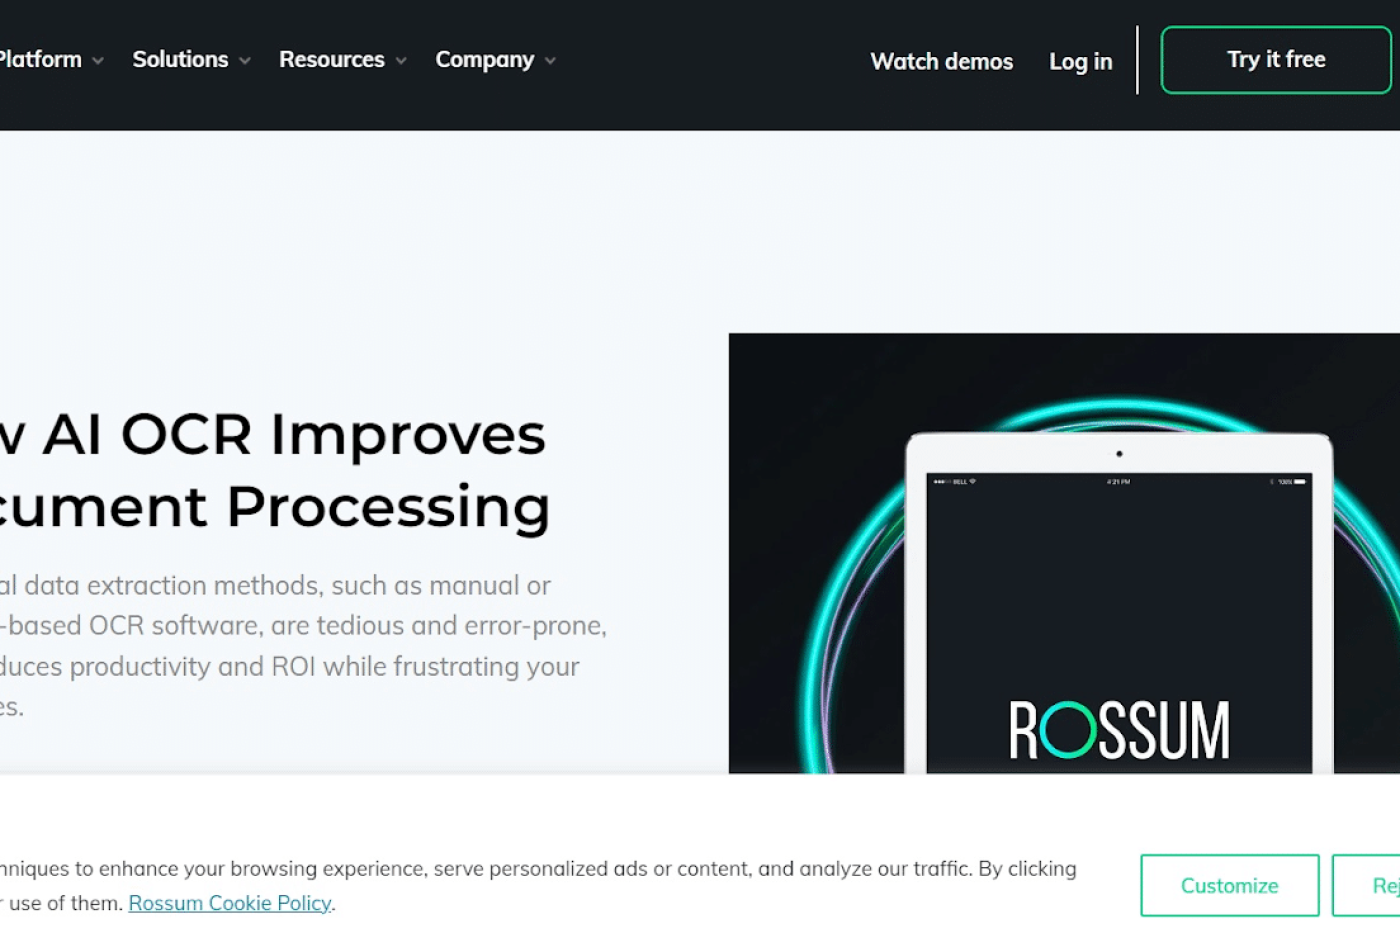 Rossum OCR Software: Review 2023